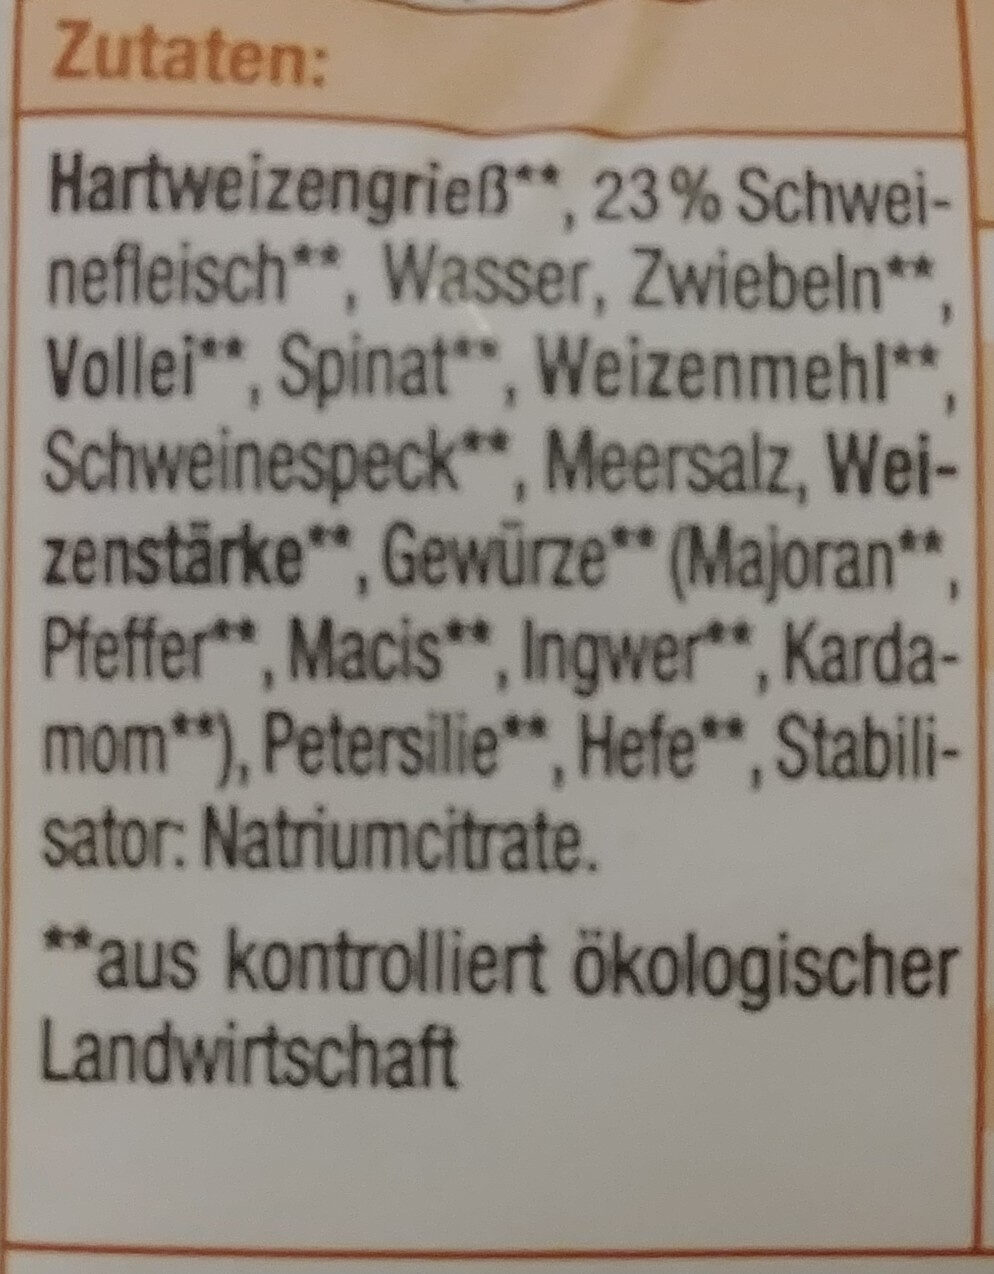 Schwäbische Maultaschen - Ingredients - de